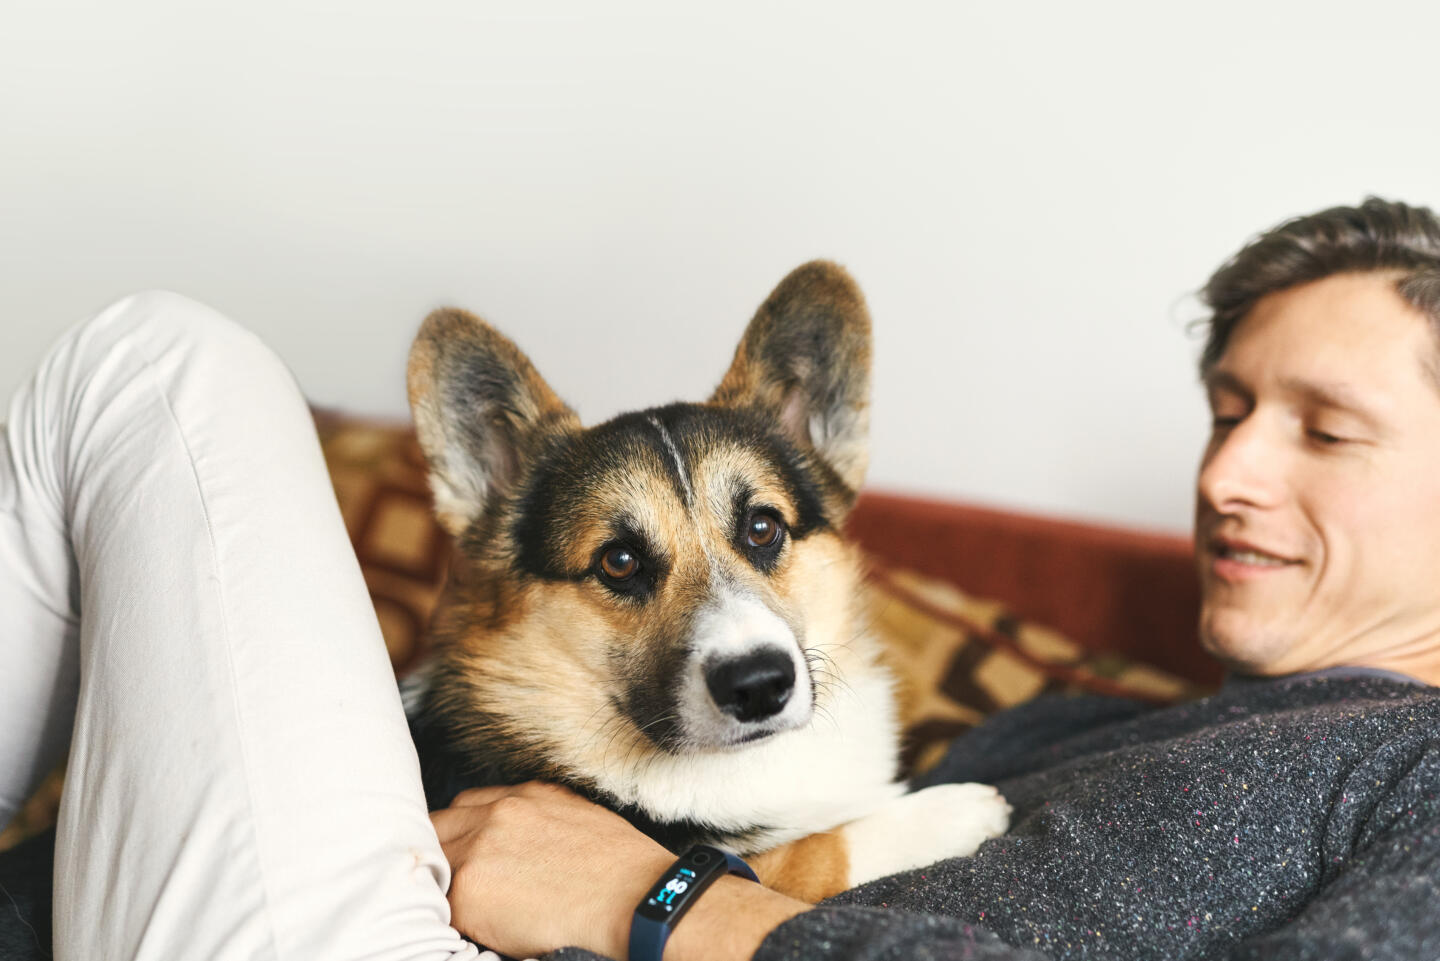 Бренд Royal Canin и приложение Petstory запустили бесплатные консультации с зоопсихологами. Изображение номер 1